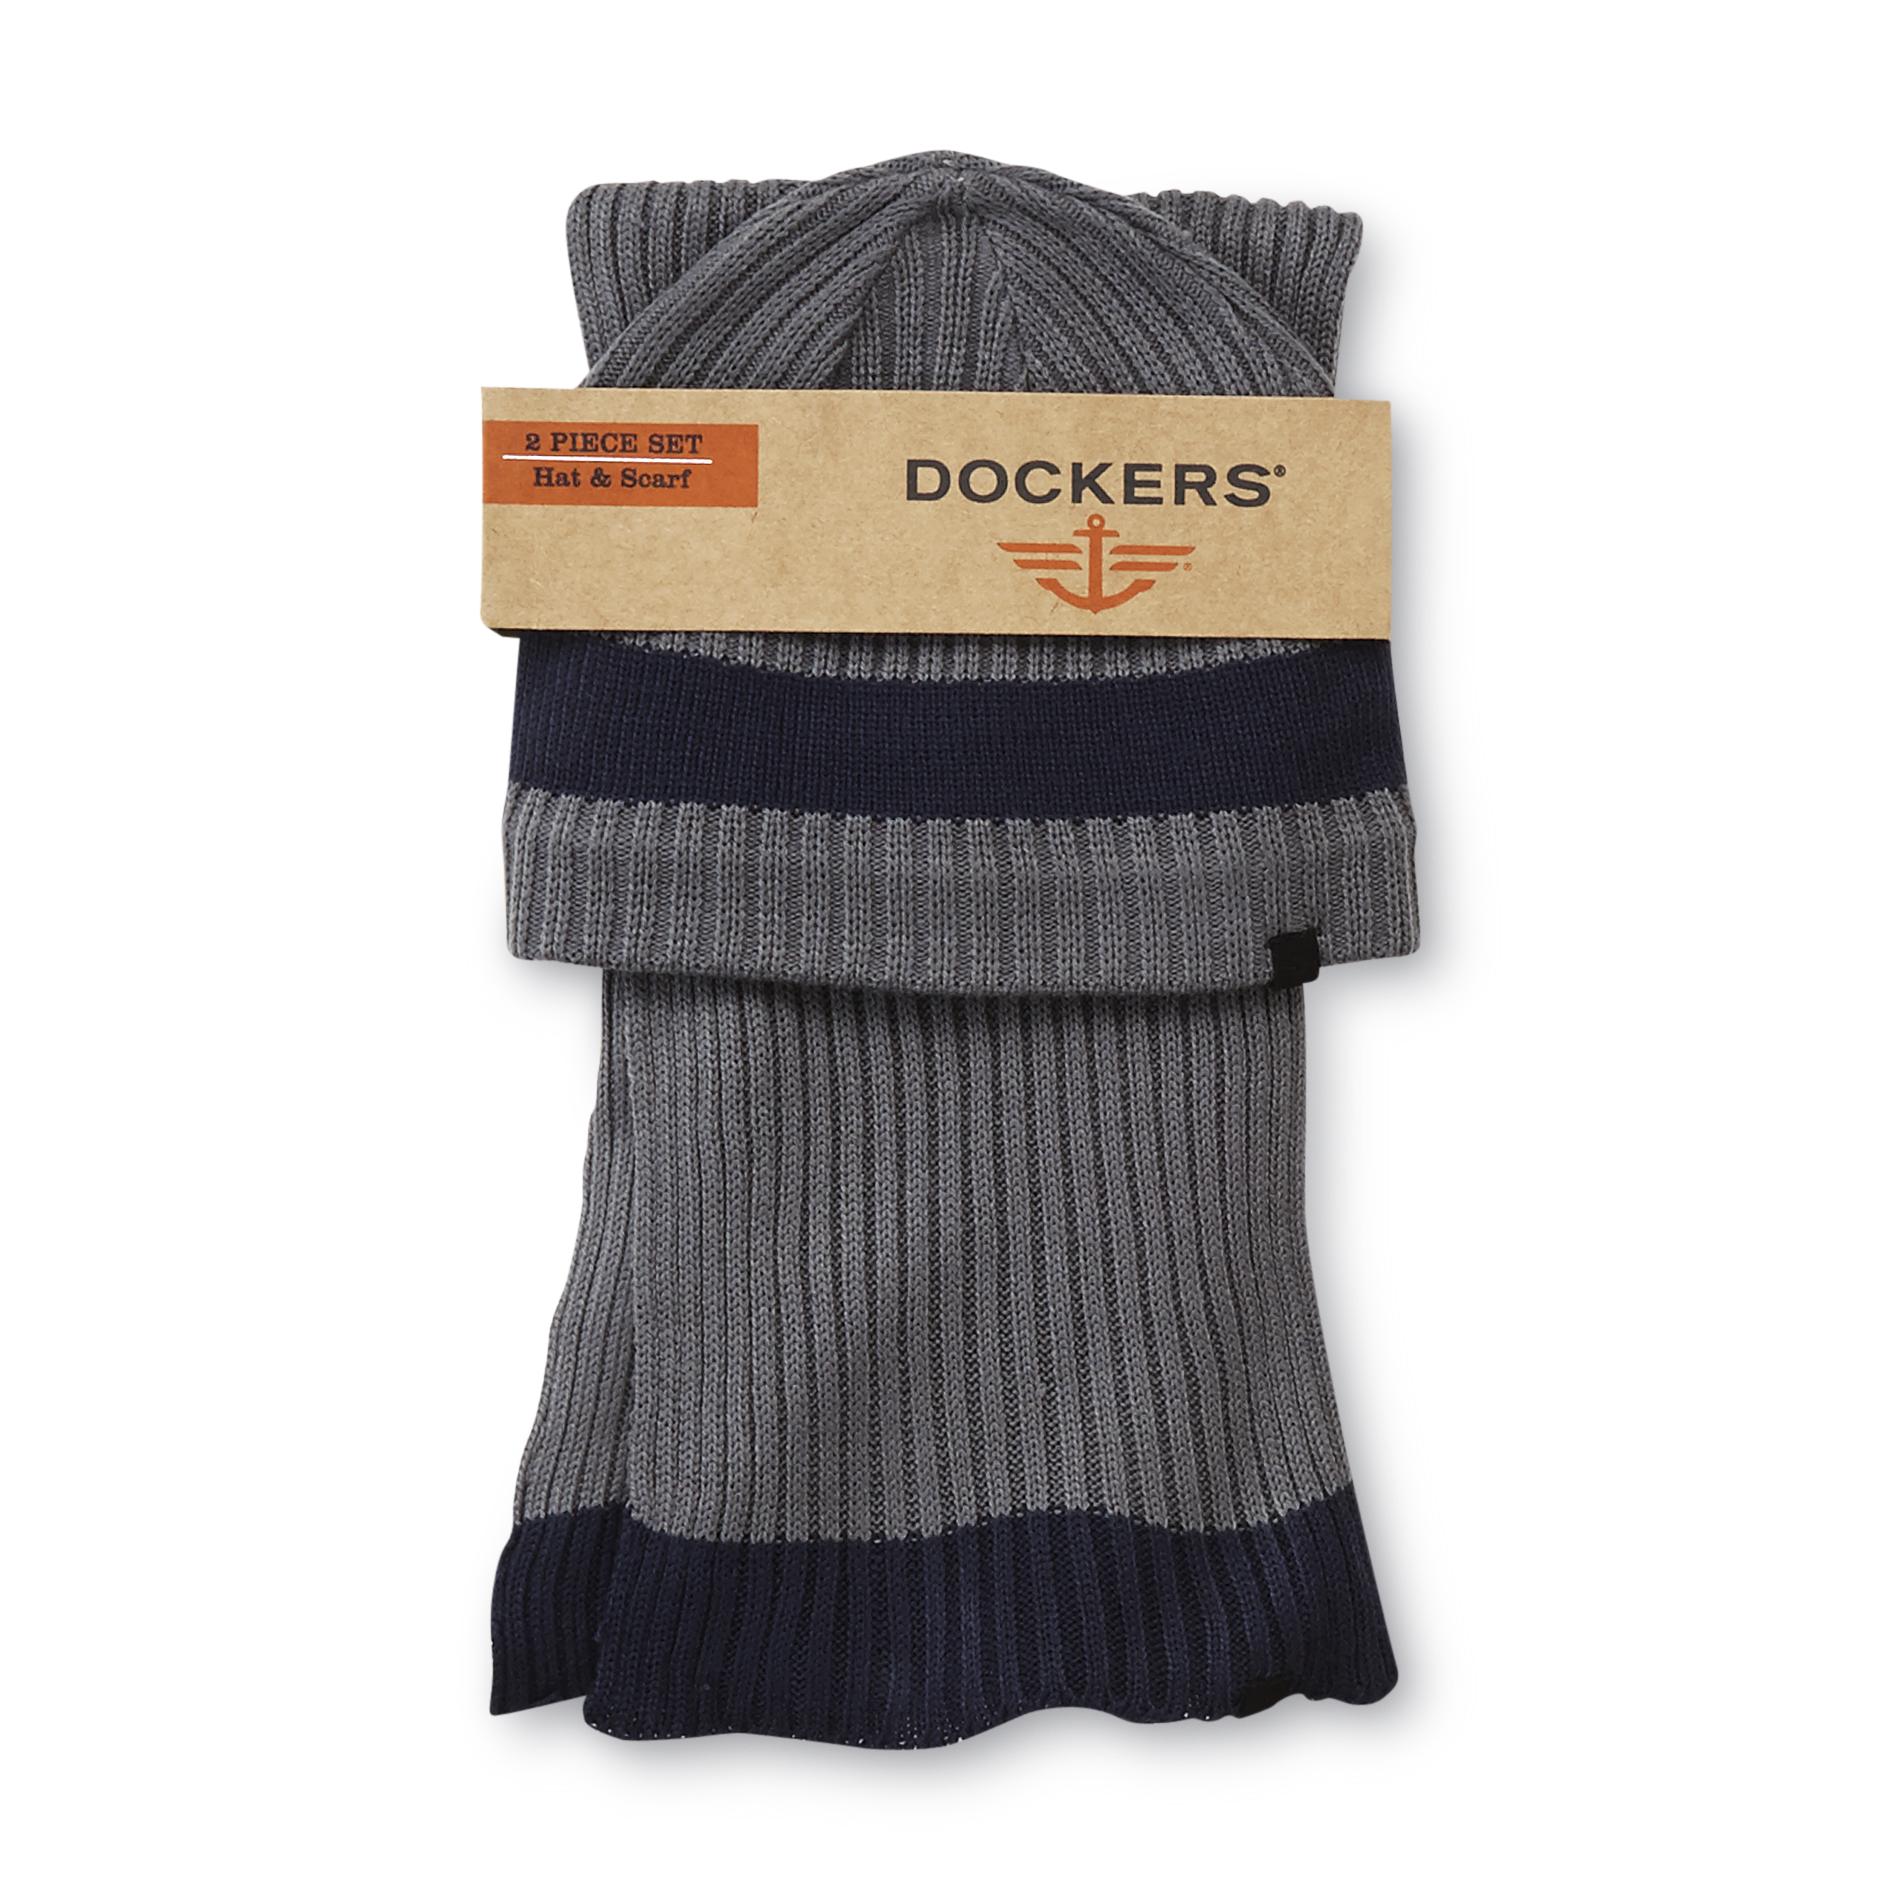 Dockers Men's Beanie Hat & Scarf - Striped